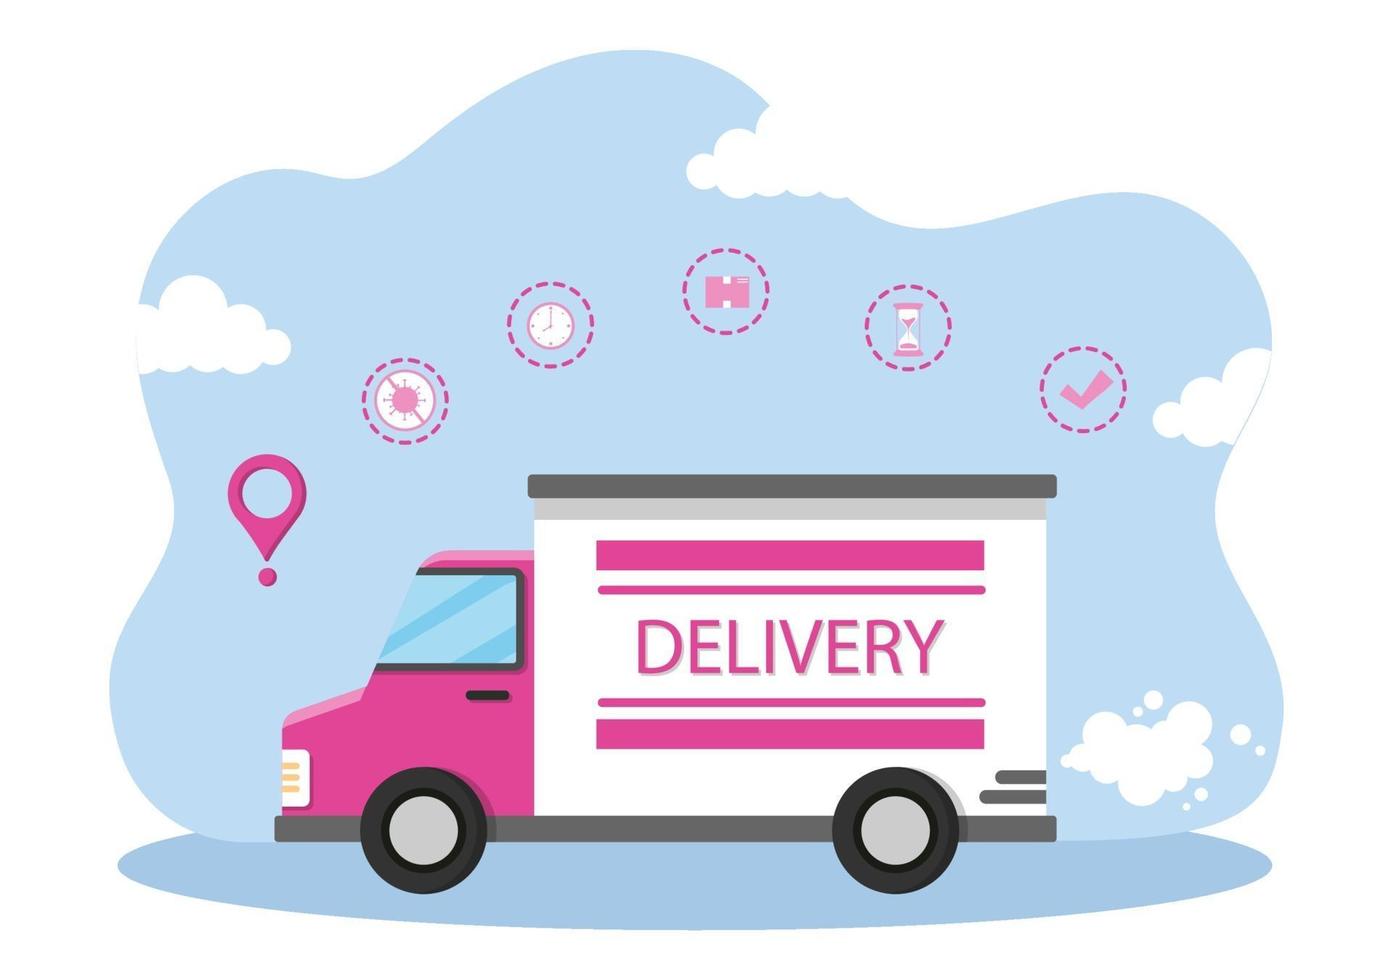 ilustração plana de entrega online para rastreamento de pedidos, serviço de correio, envio de mercadorias, logística urbana usando um caminhão ou motocicleta vetor